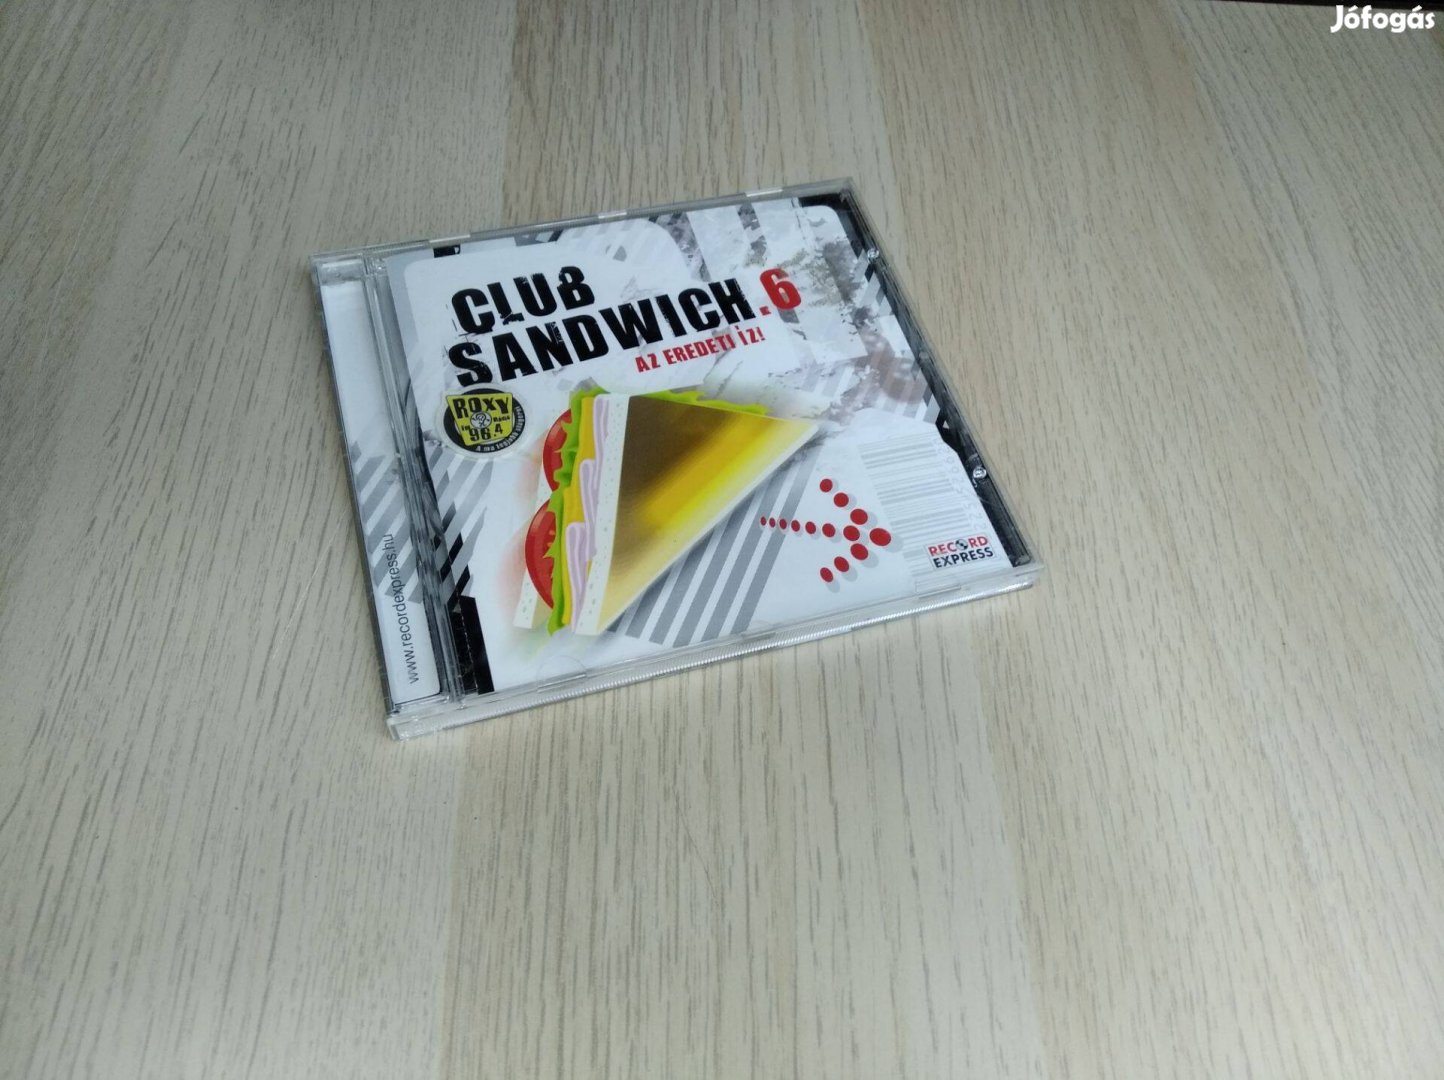 Club Sandwich 6 / CD